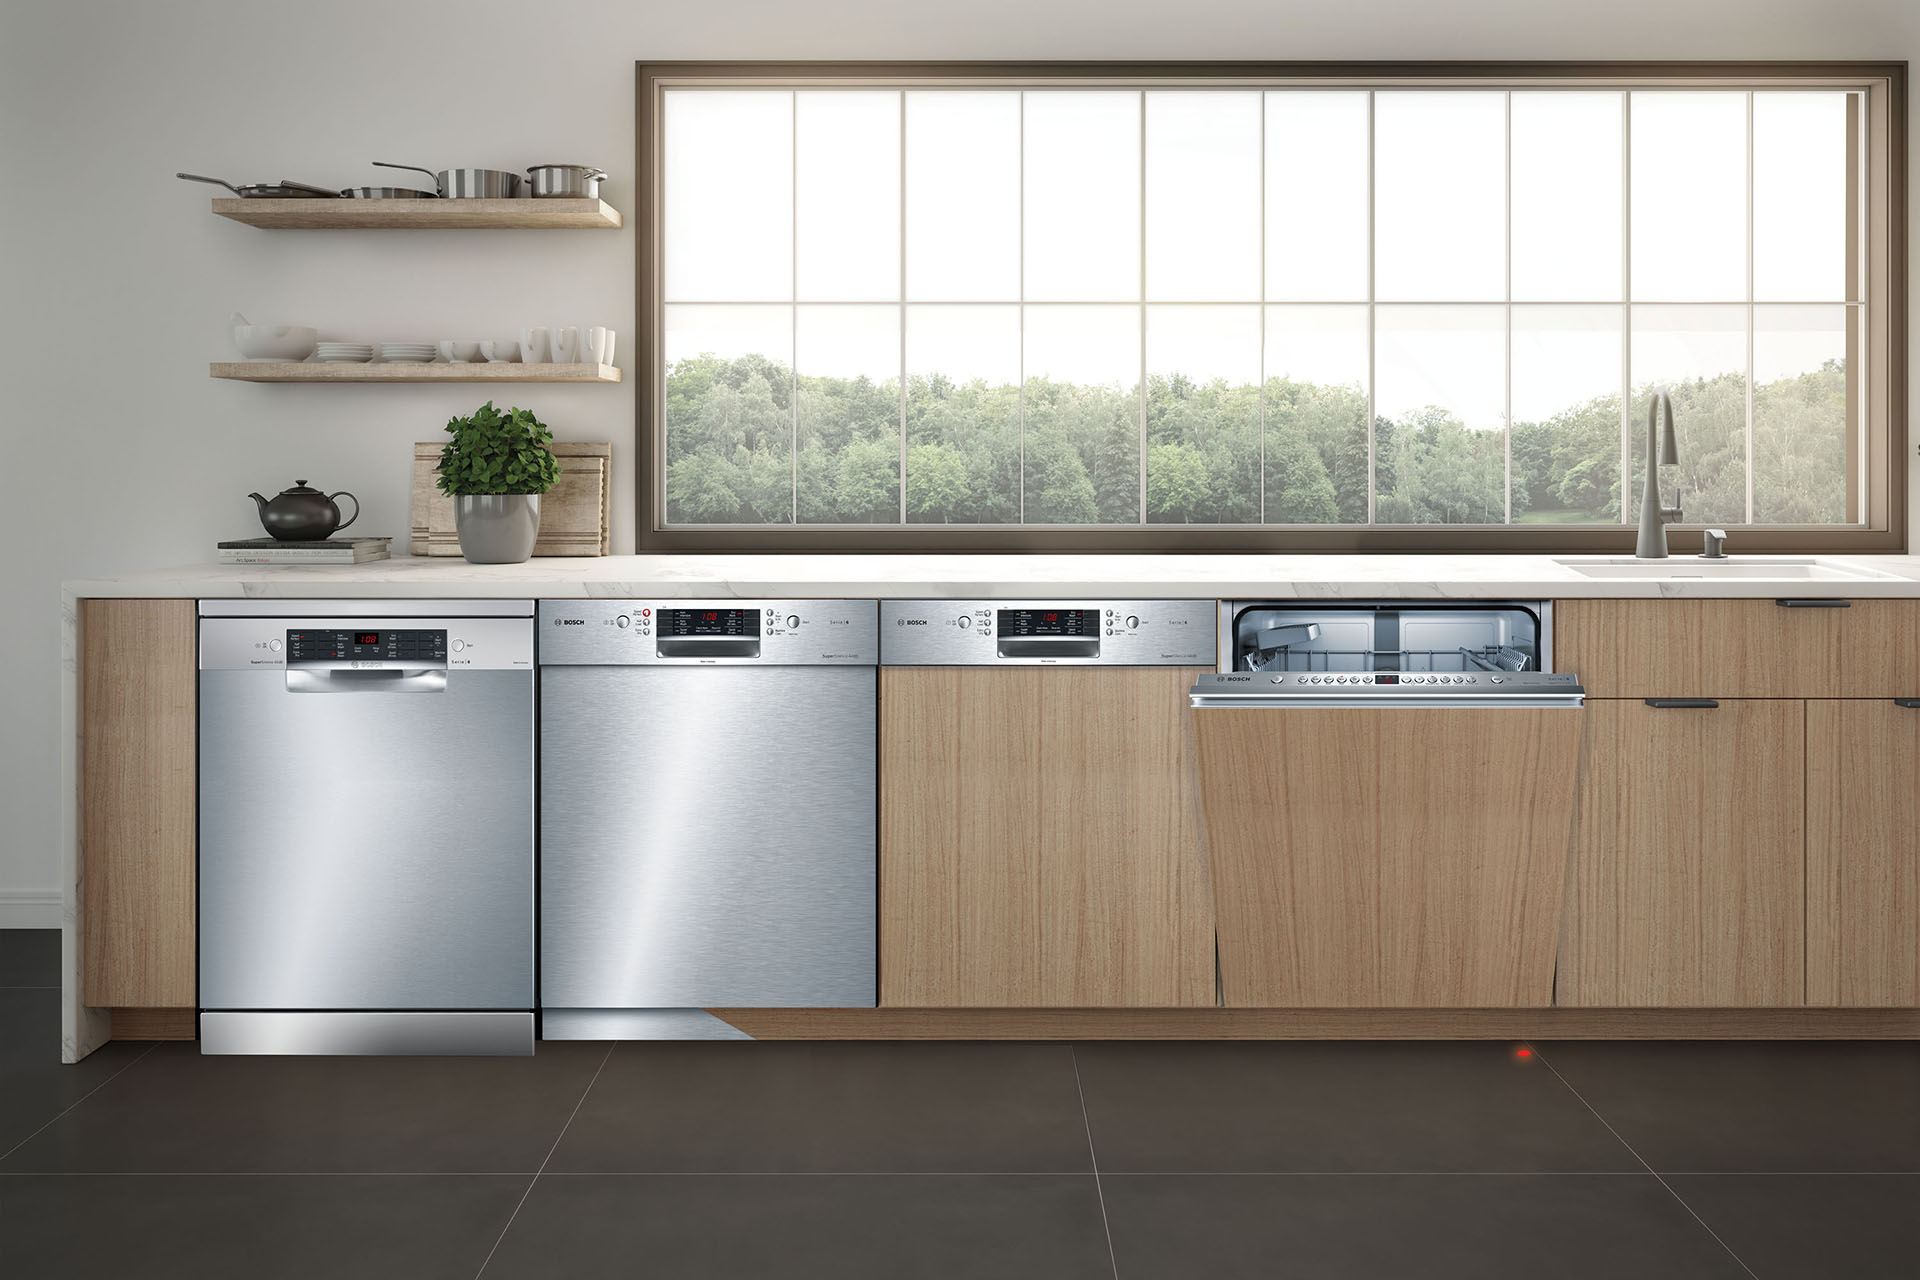 Bosch dishwasher kitchen appliance installed